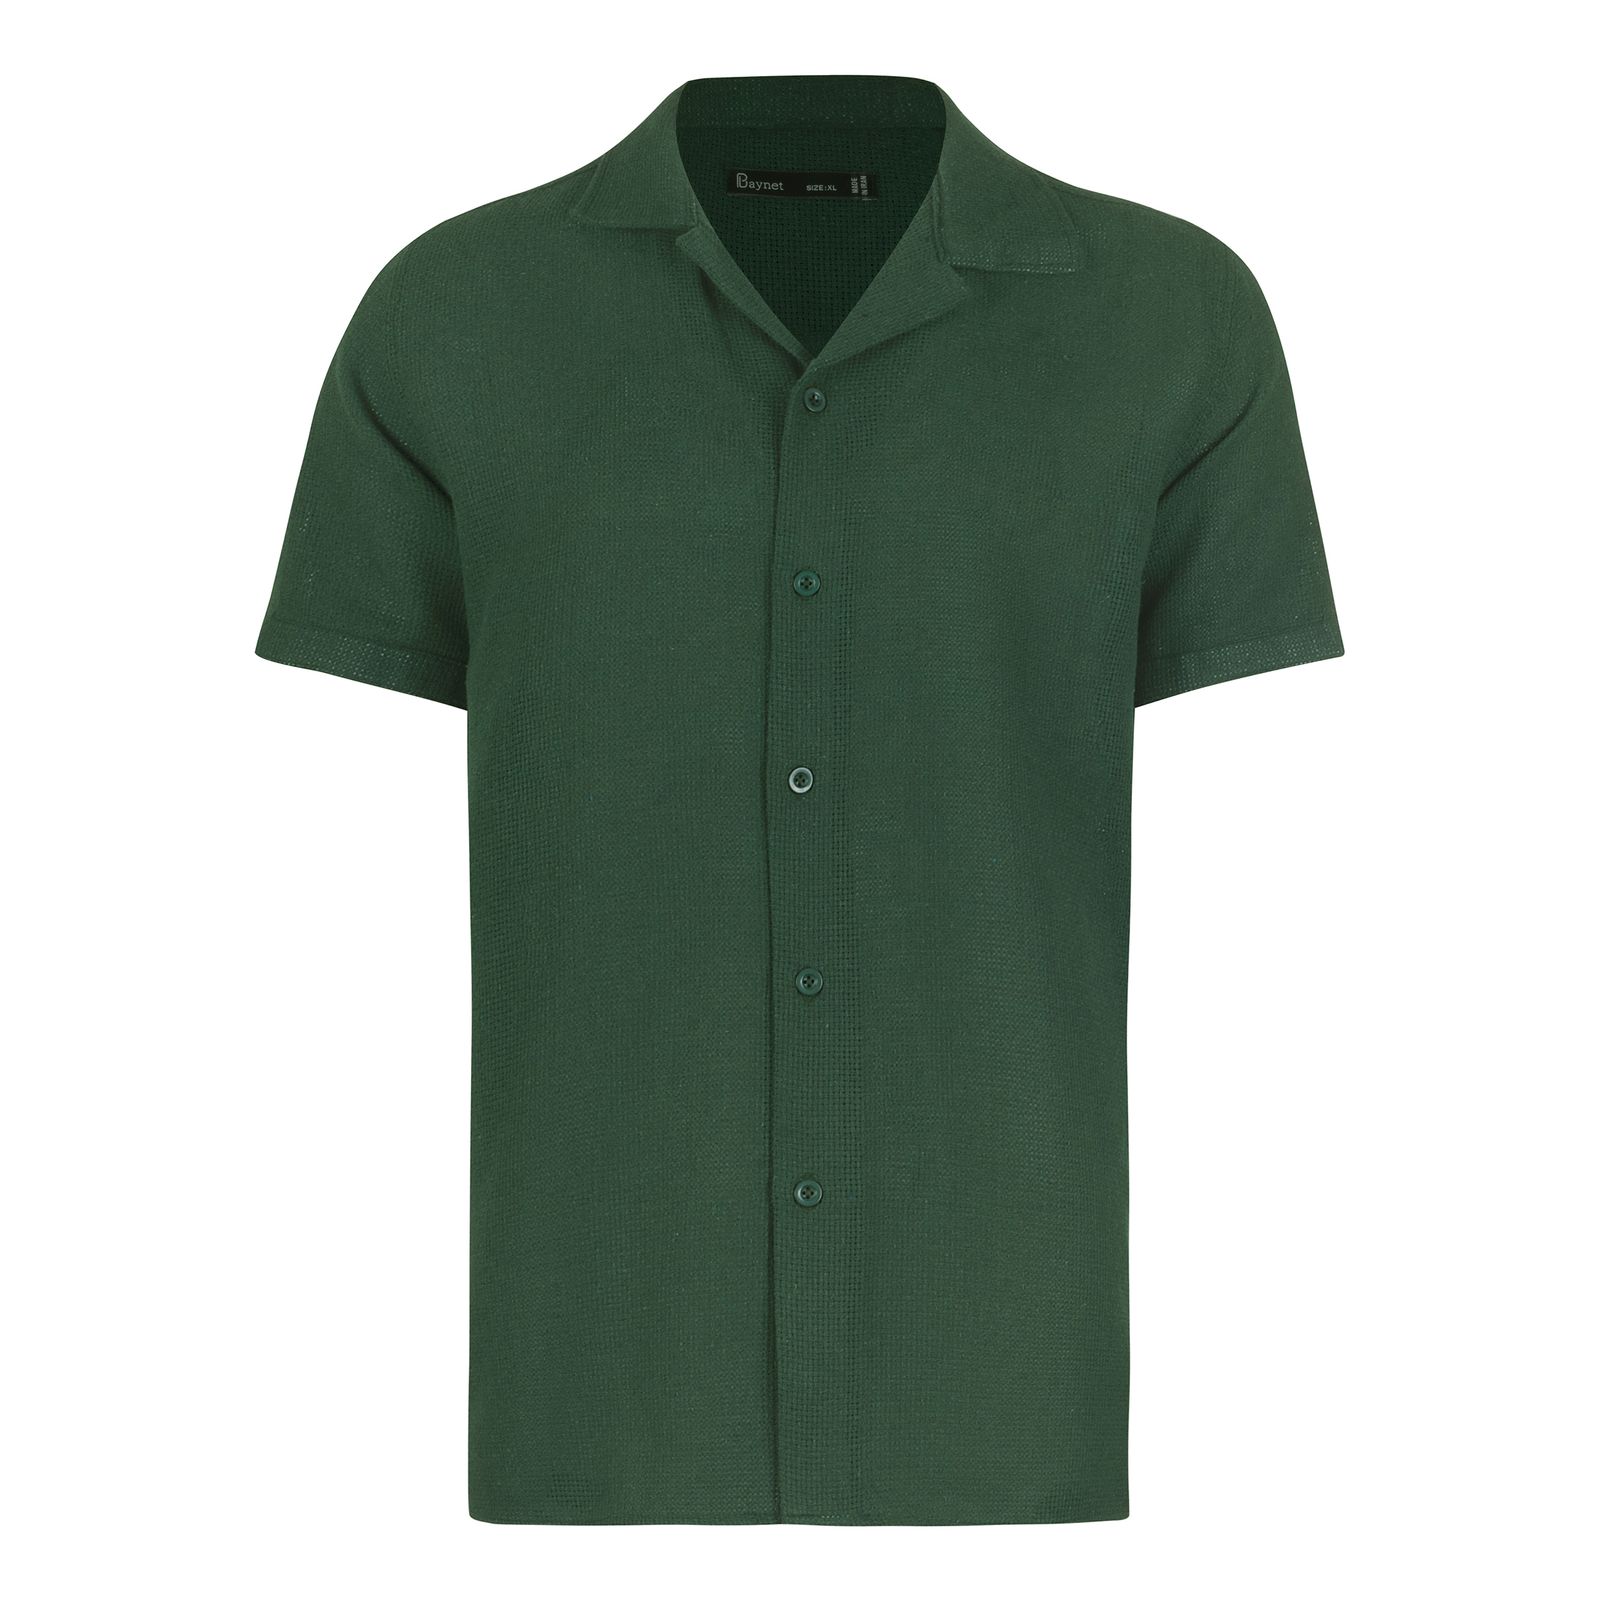 پیراهن آستین کوتاه مردانه باینت مدل 772-3 رنگ سبز -  - 2